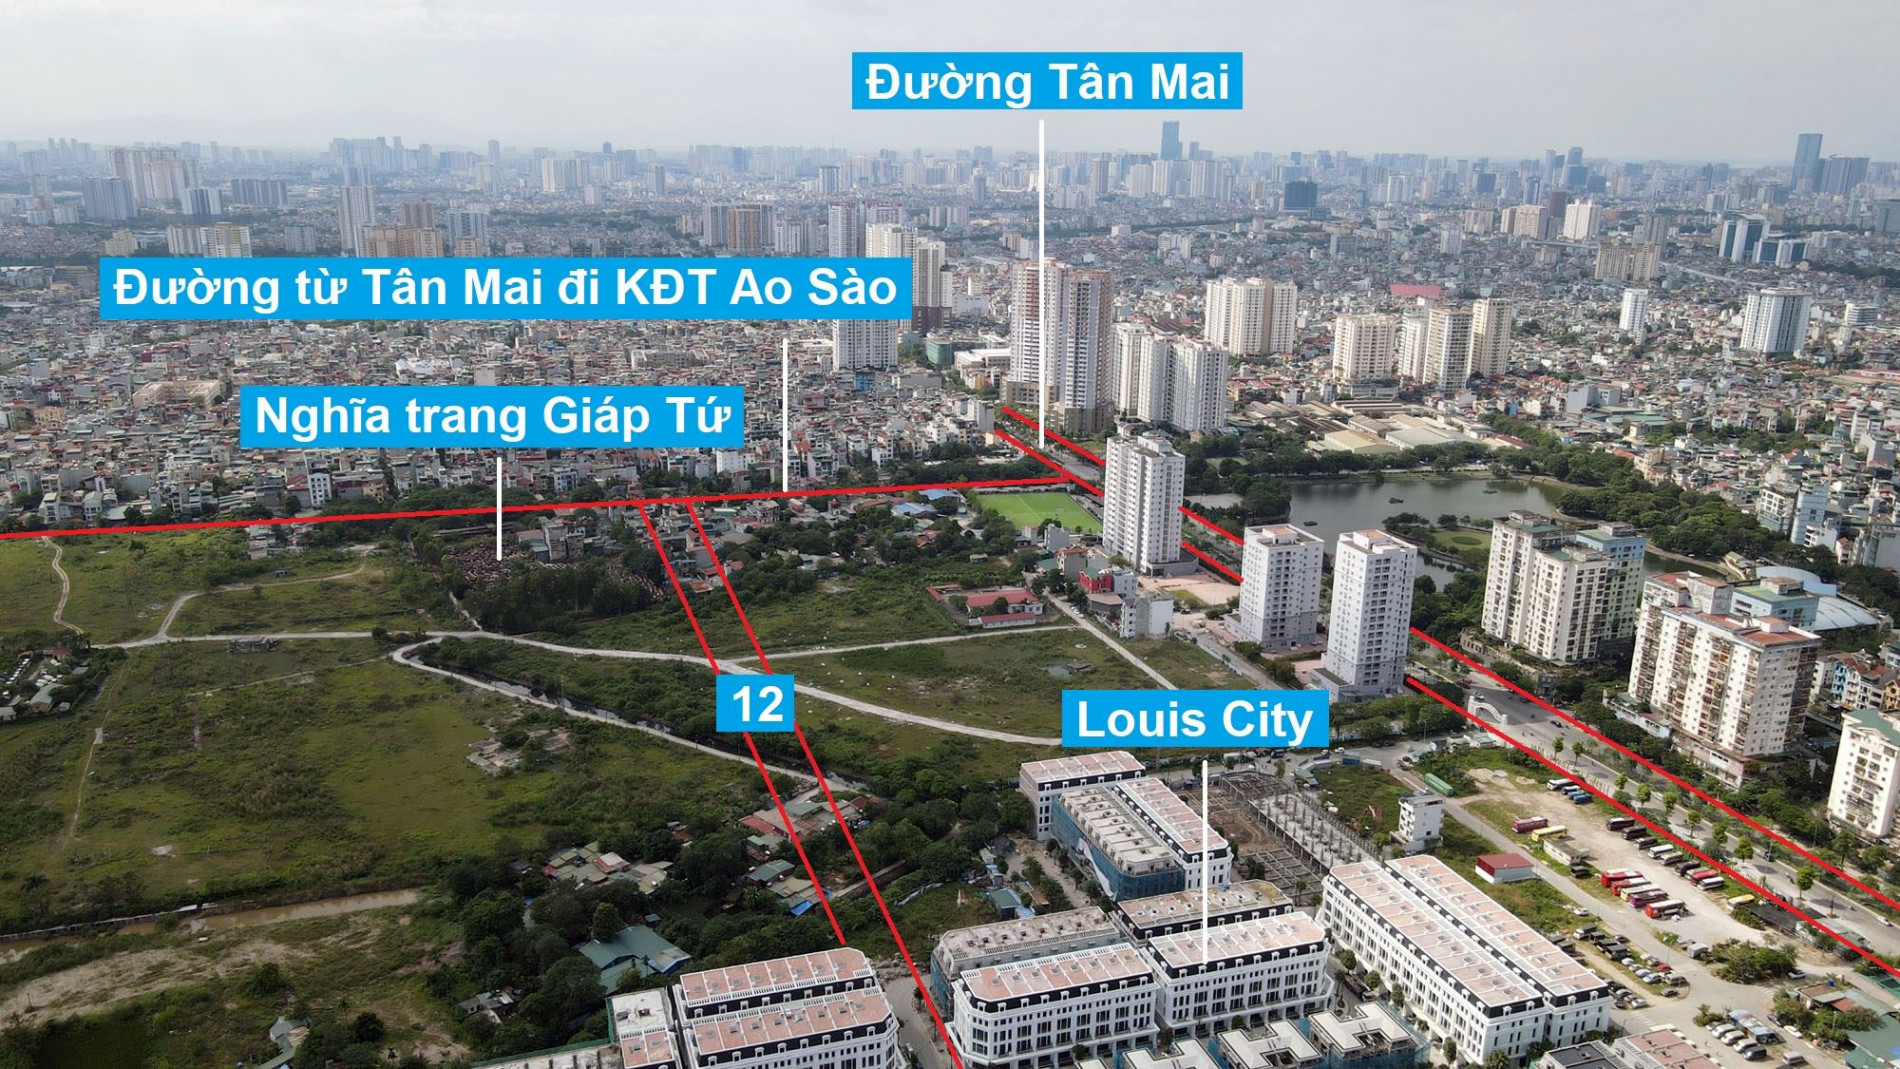 Đường sẽ mở theo quy hoạch ở phường Hoàng Văn Thụ, Hoàng Mai, Hà Nội (phần 4)